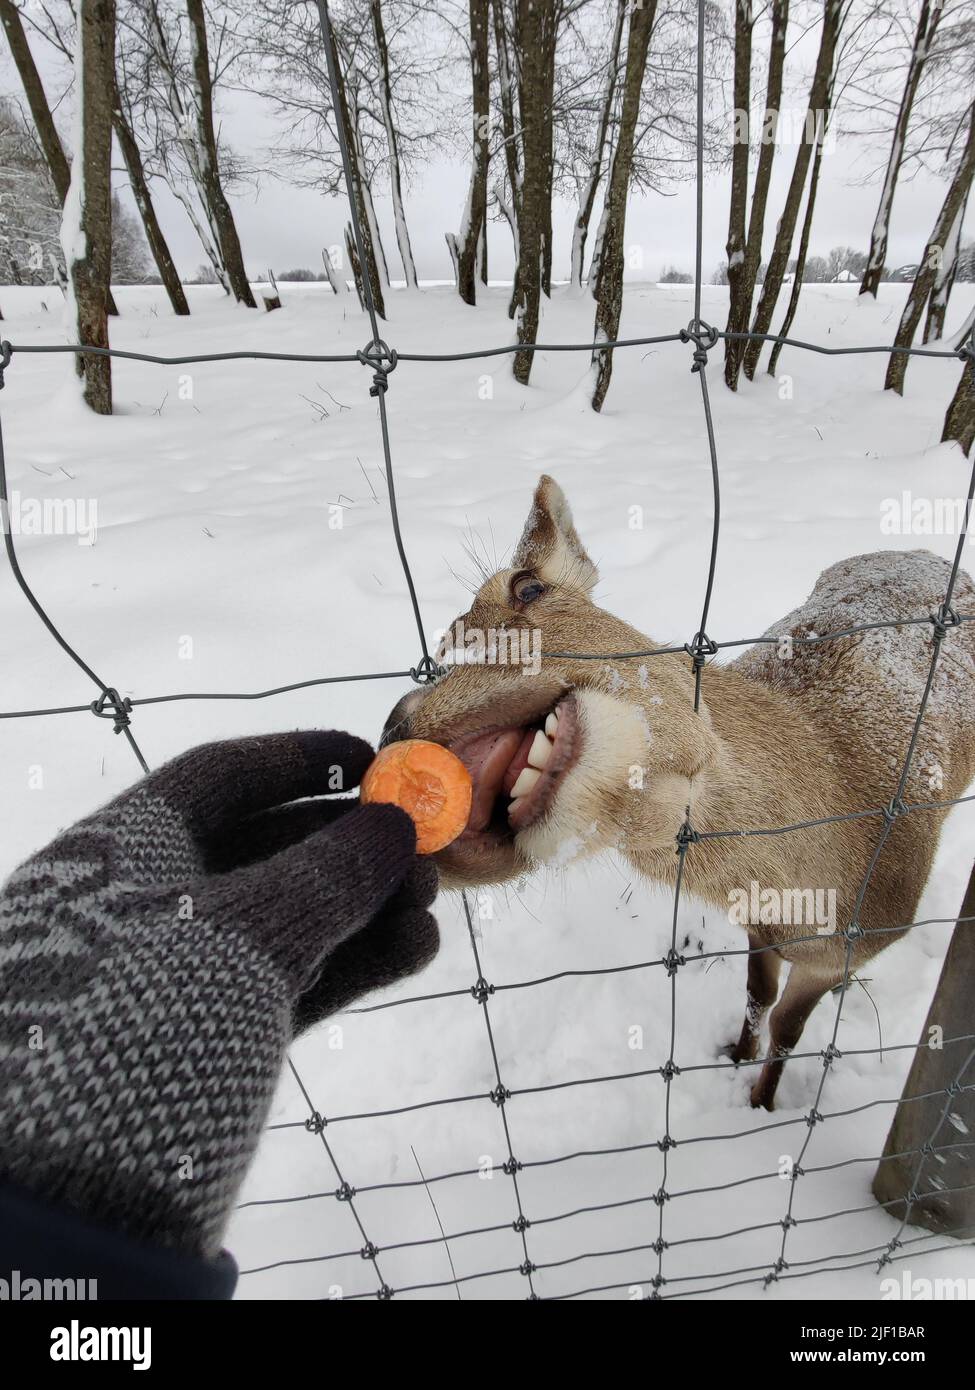 Cute museruola della femmina del cervo dietro la recinzione. Alimentazione di animali alla fattoria dei cervi. La mano umana dà al cervo una carota. Parco Safari. Foto Stock